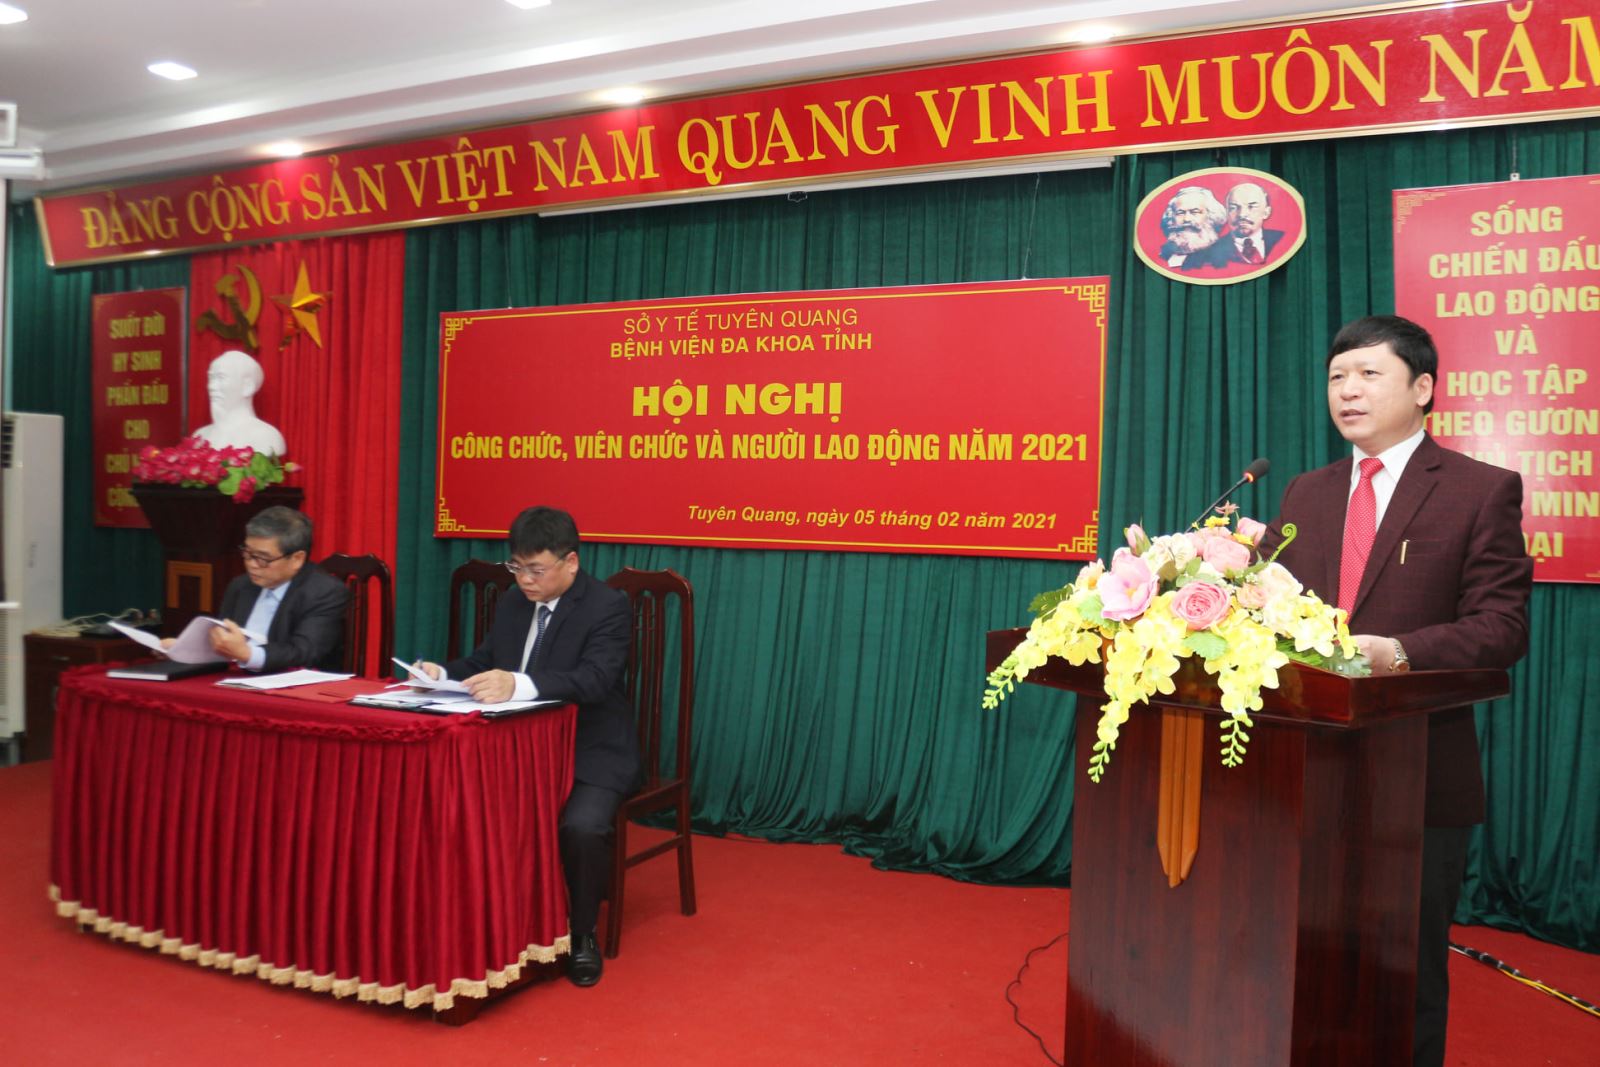 Đ/c Phạm Quang Thanh - Bí thư Đảng ủy, Giám đốc Bệnh viện phát biểu ý kiến chỉ đạo tại Hội nghị